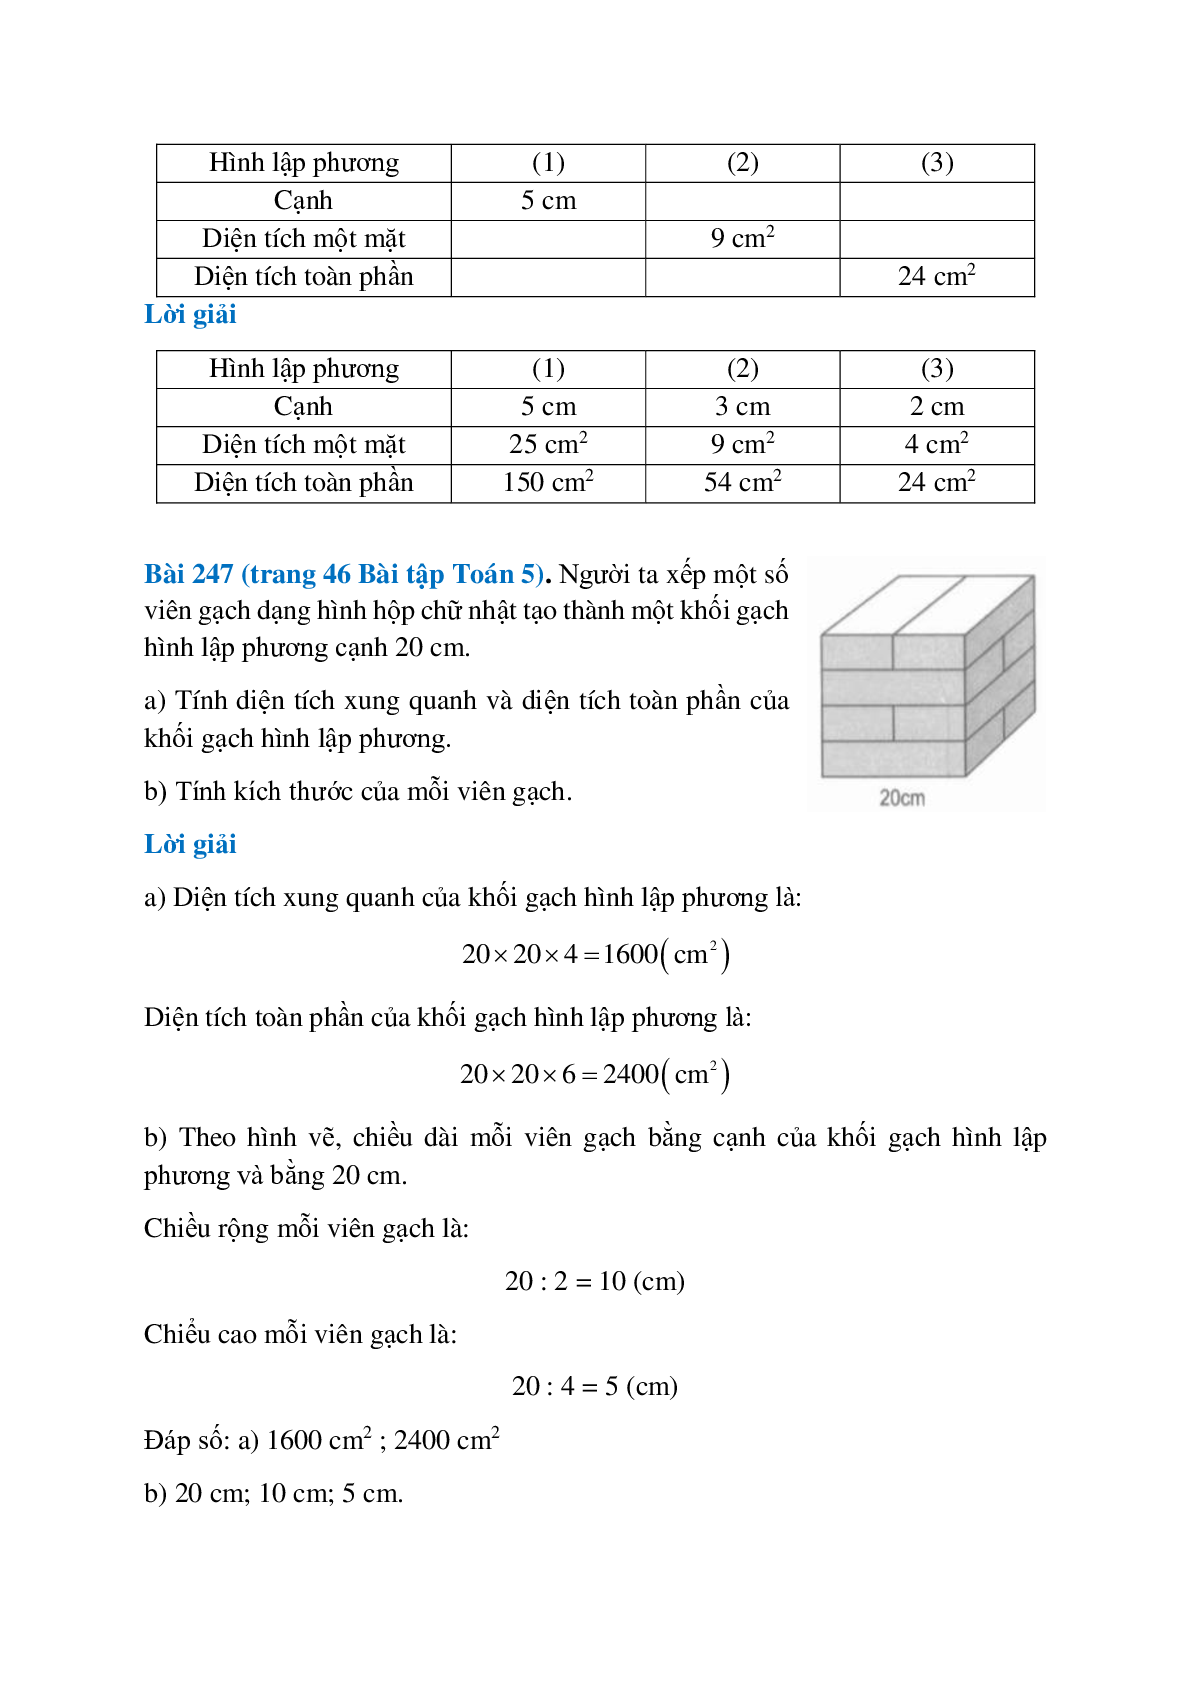 SBT Toán lớp 5 trang 44, 45, 46 Diện tích xung quanh, diện tích toàn phần của hình hộp chữ nhật và hình lập phương (trang 5)